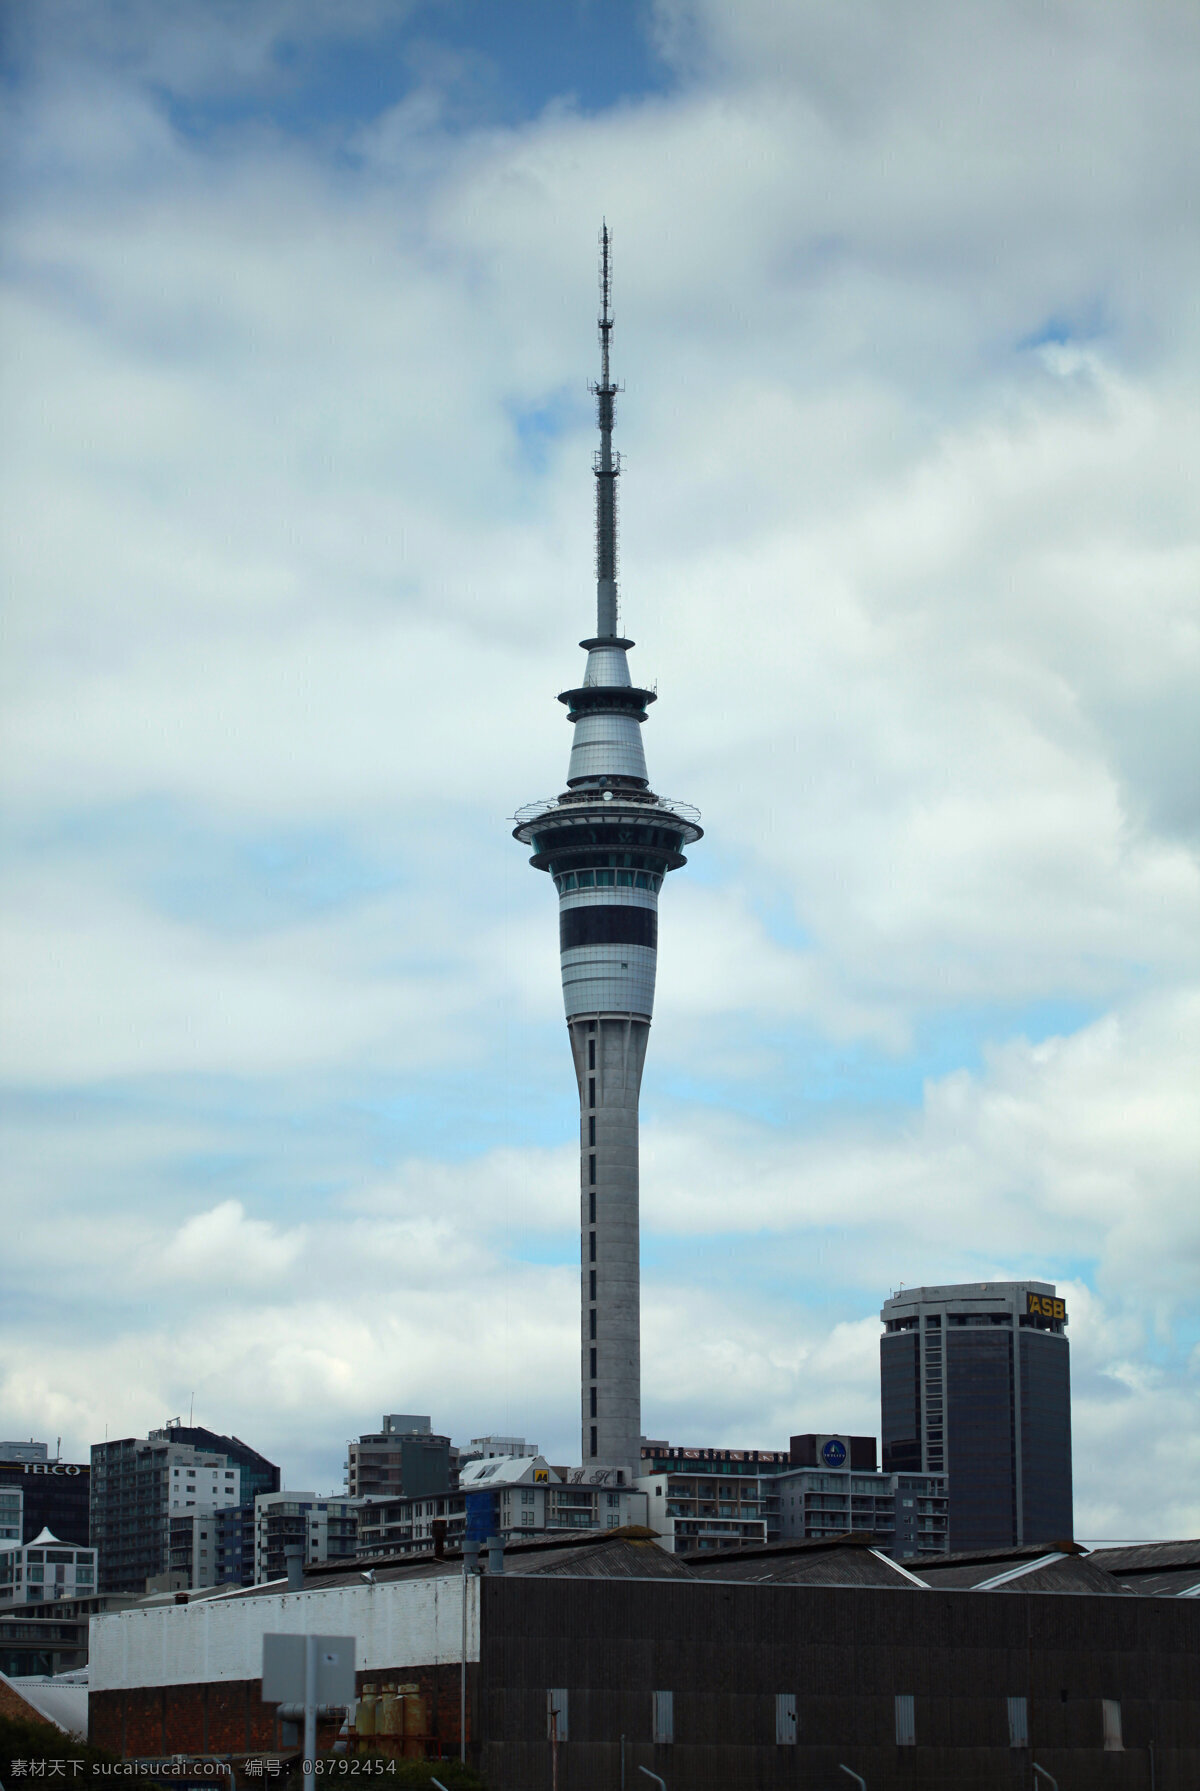 新西兰 建筑 风景 蓝天 白云 高楼 高塔 天空塔 新西兰风光 建筑园林 建筑摄影